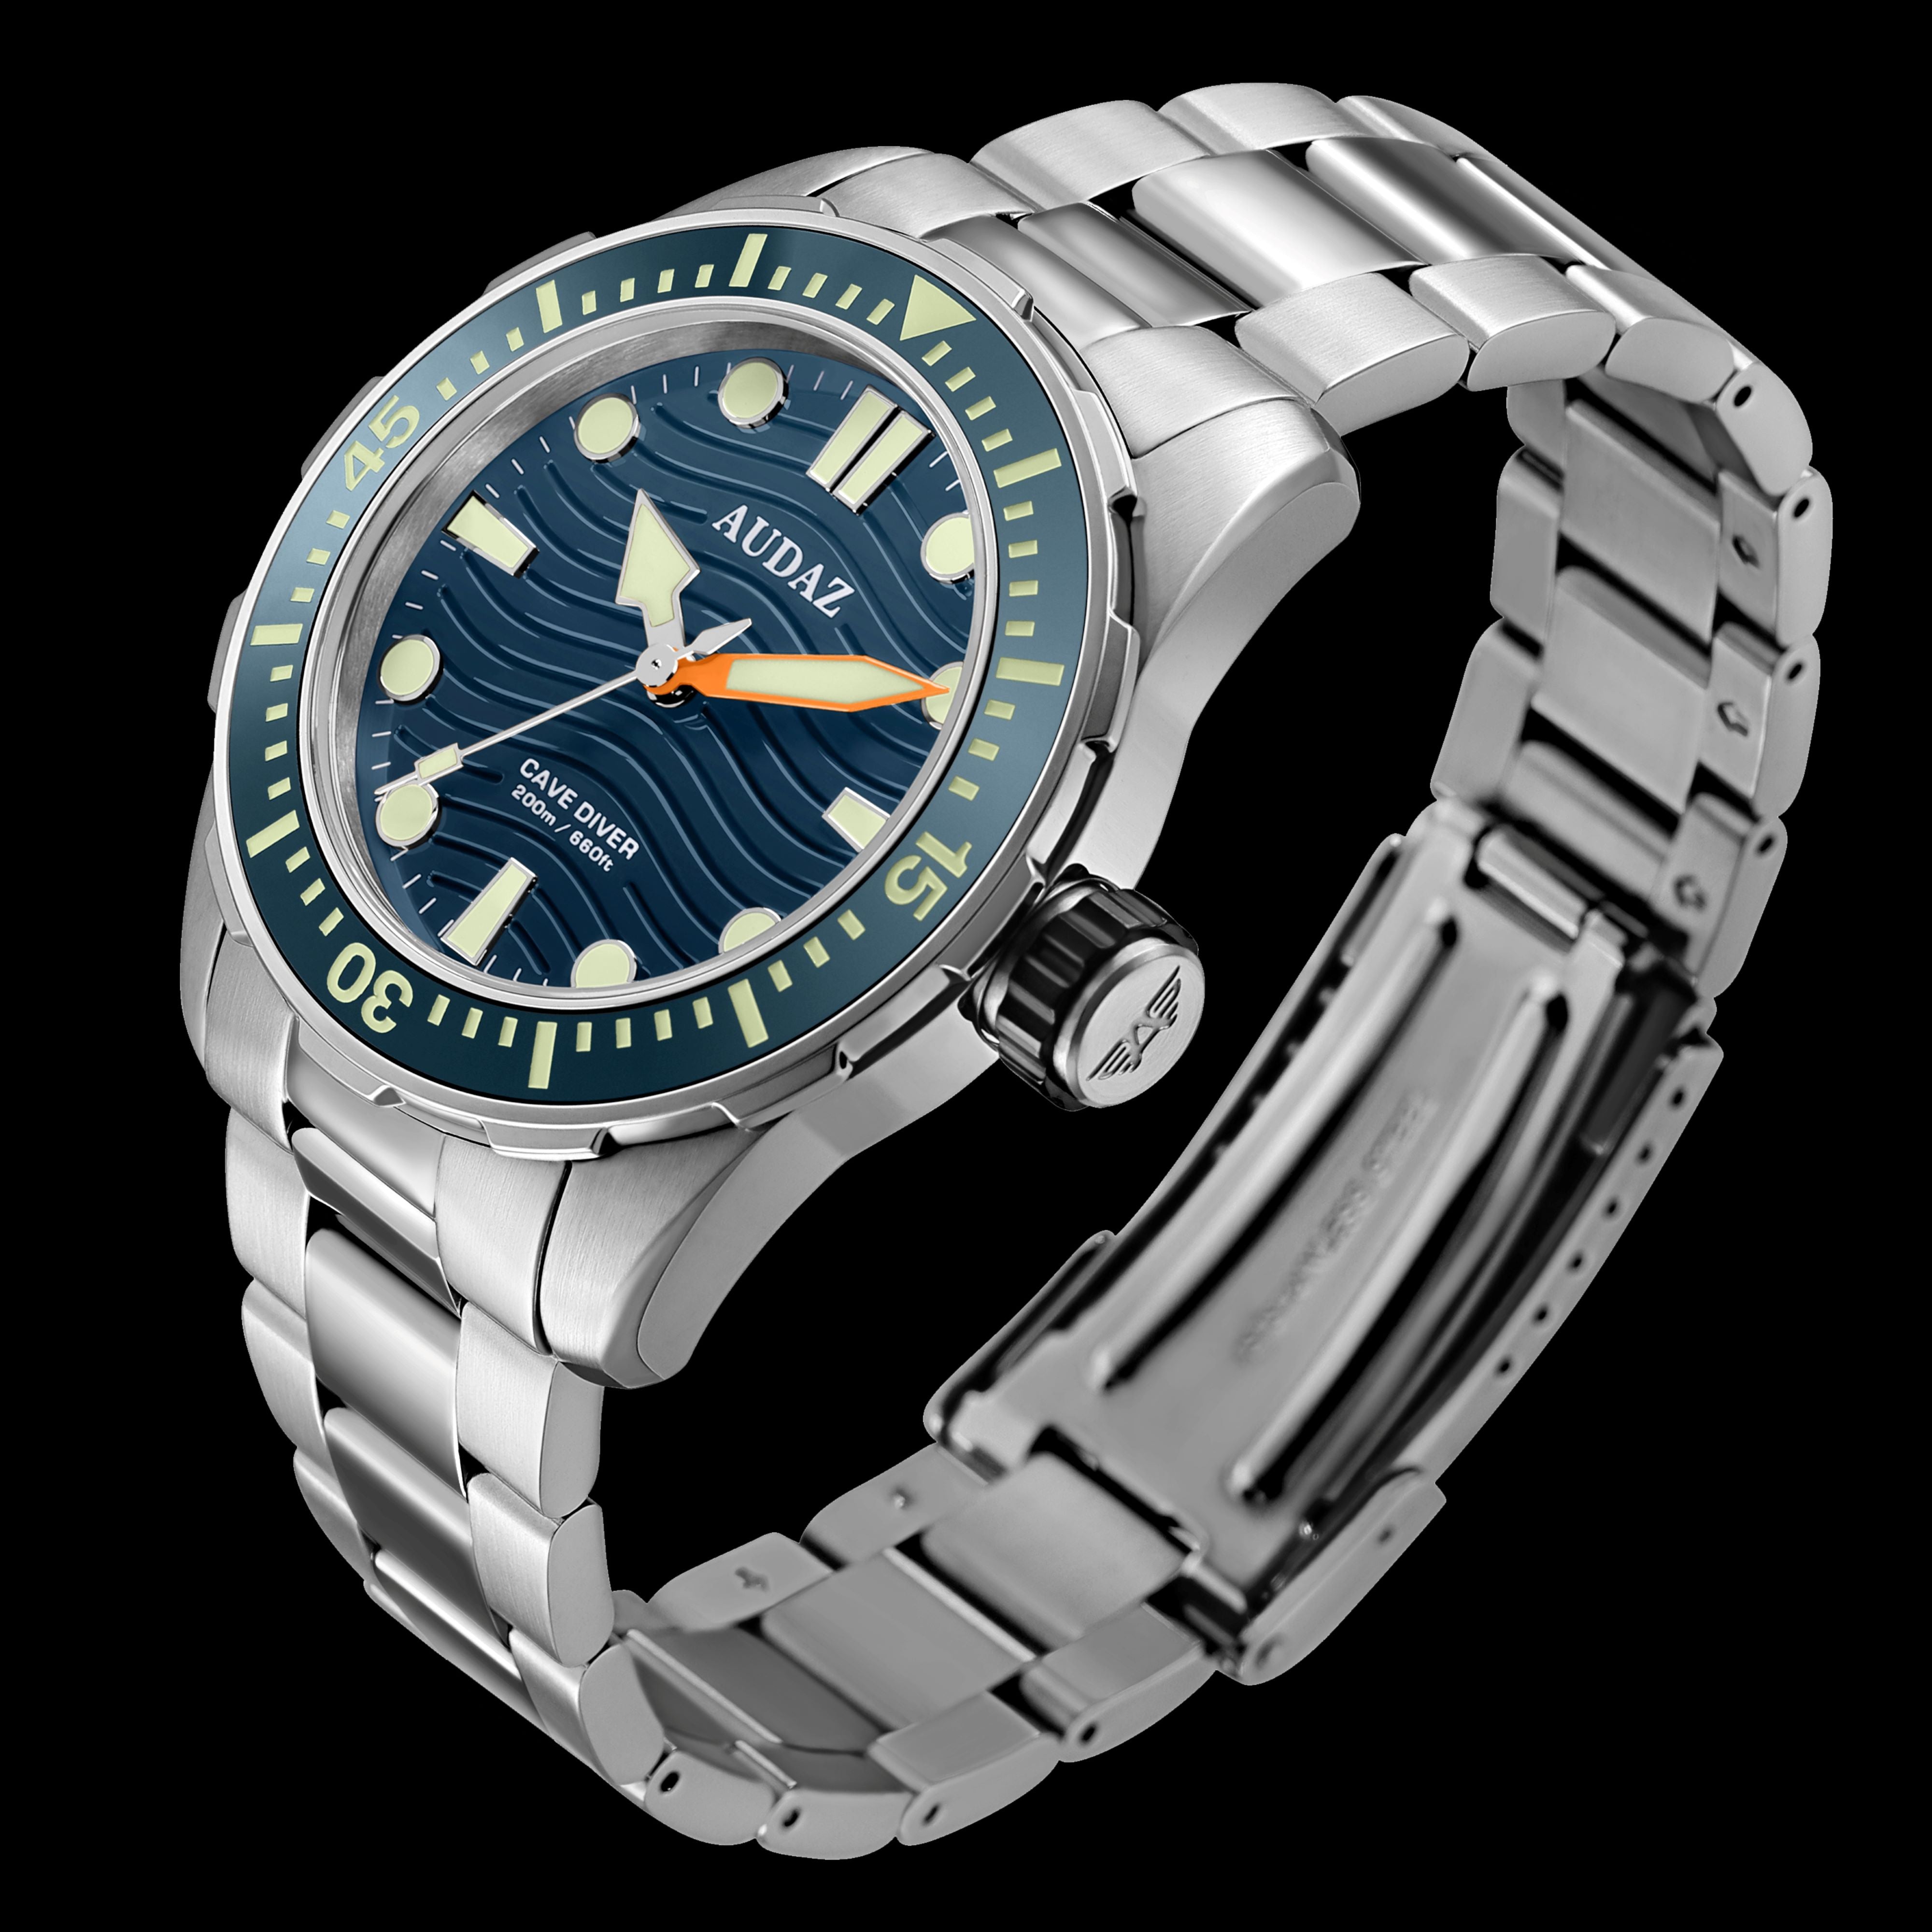 AUDAZ - CAVE DIVER 200m I Sapphire I Meca-Quartz Movement - Audaz Watches